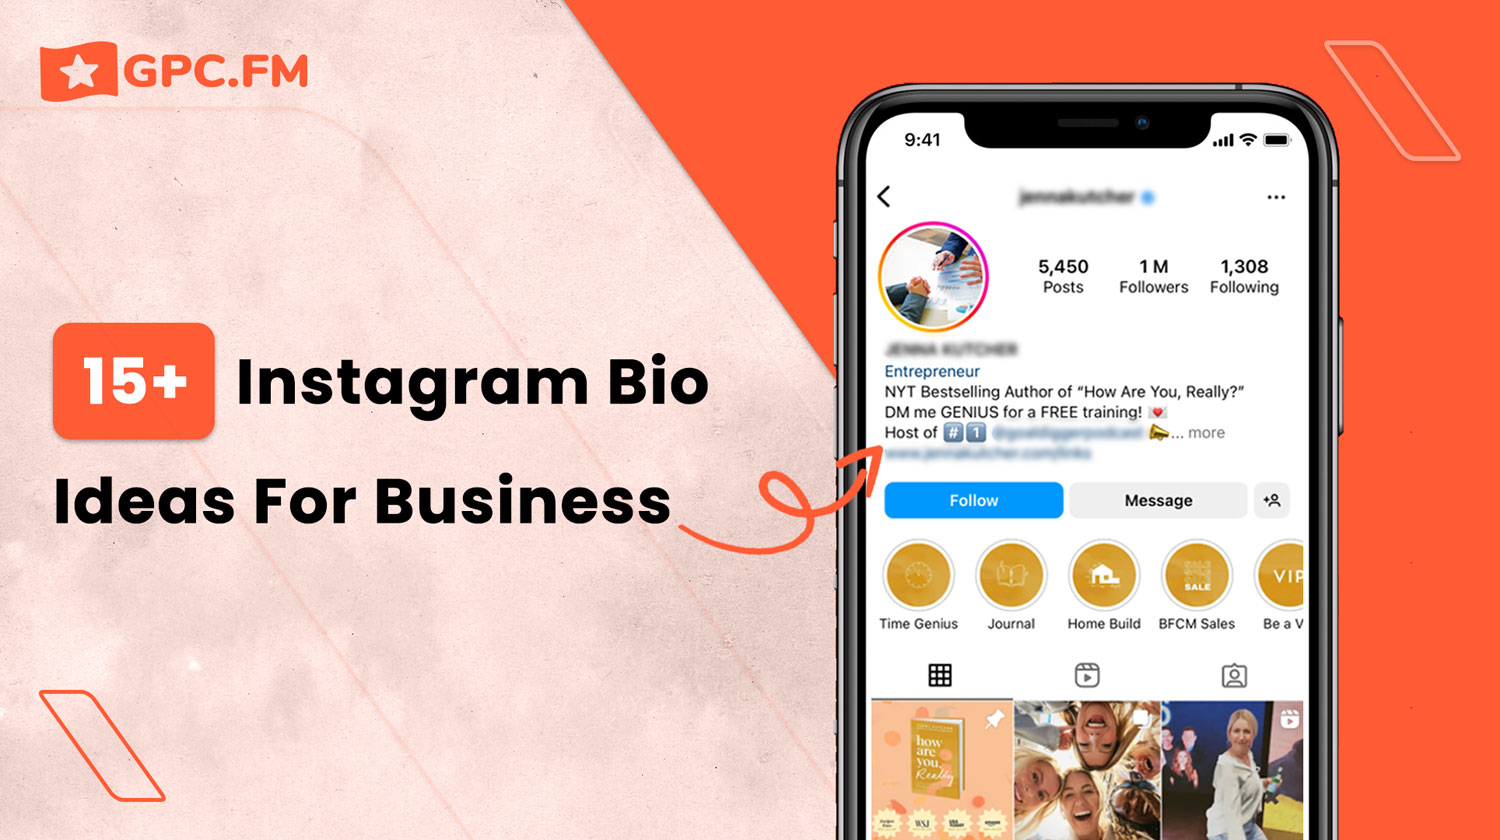 15+ Instagram Bio Ideas For Business | GPC.fm